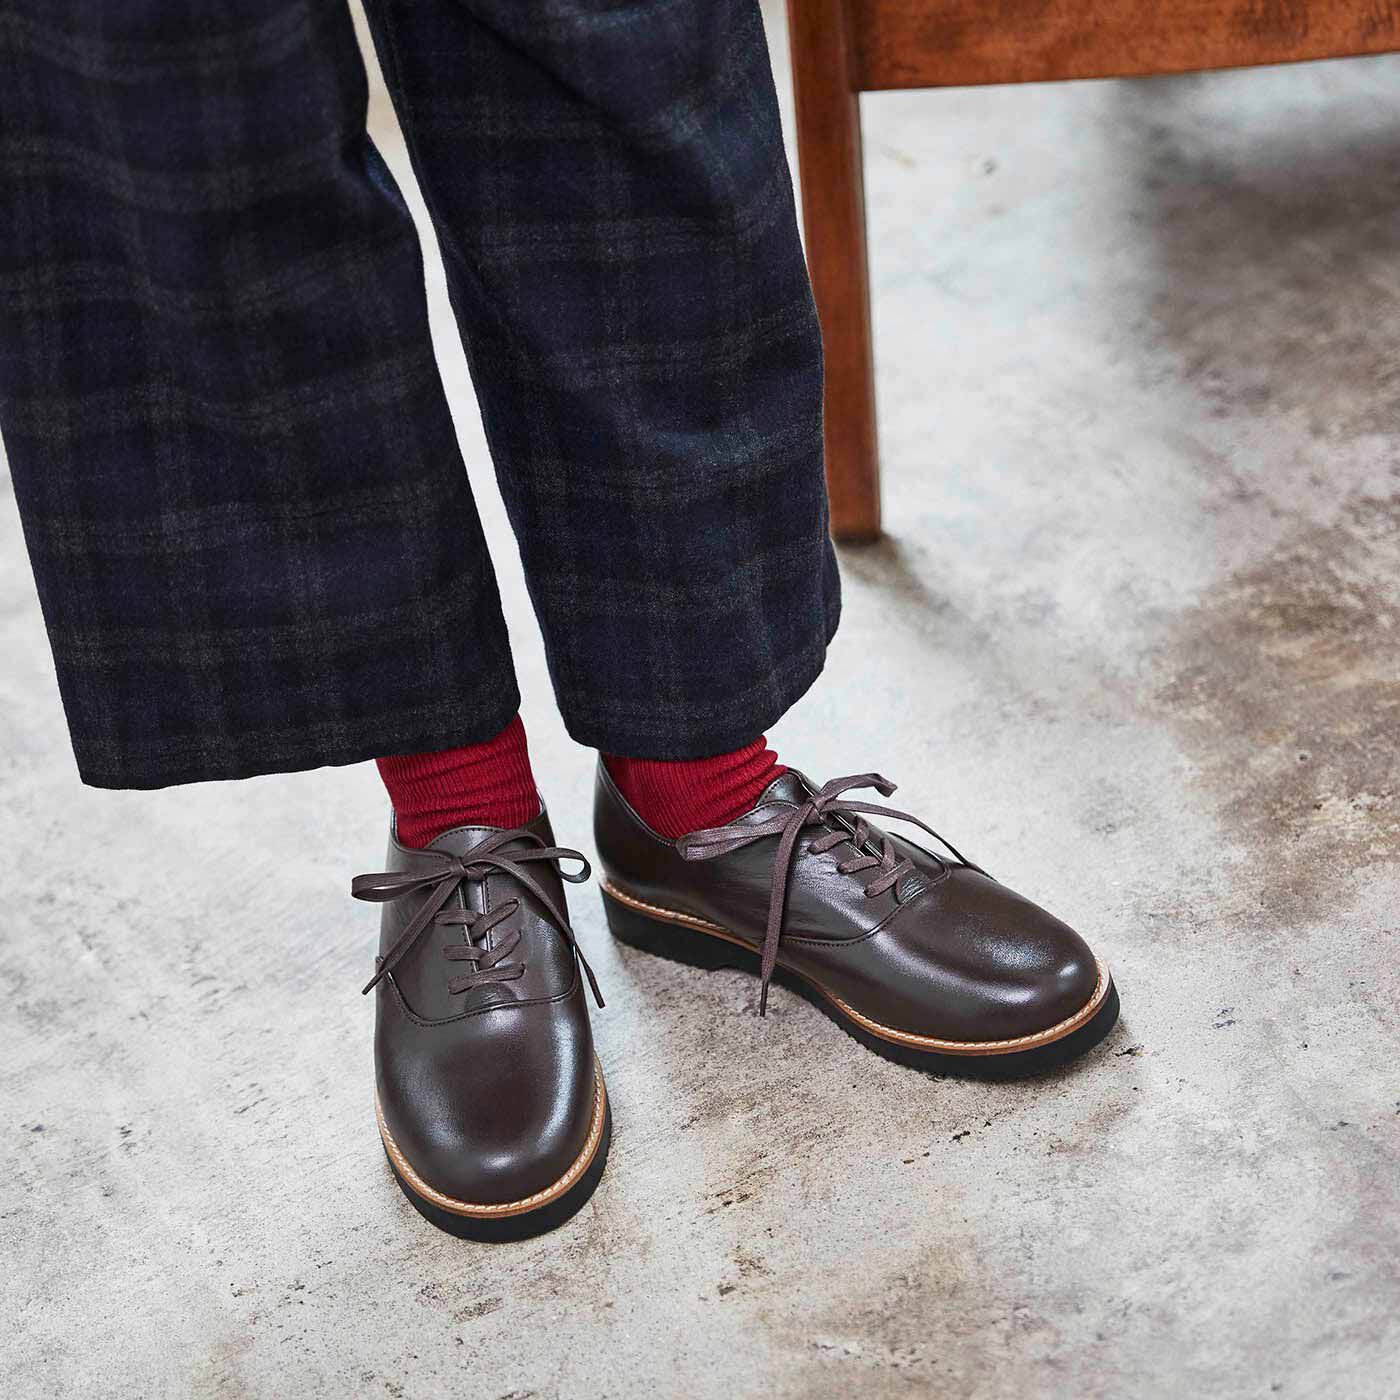 ＆Stories|長田の靴職人が作った 職人本革のポストマンシューズ〈ダークブラウン〉|足もとからコーデをぐっと引き締めて、カジュアルな着こなしもワンランク格上げしてくれます。